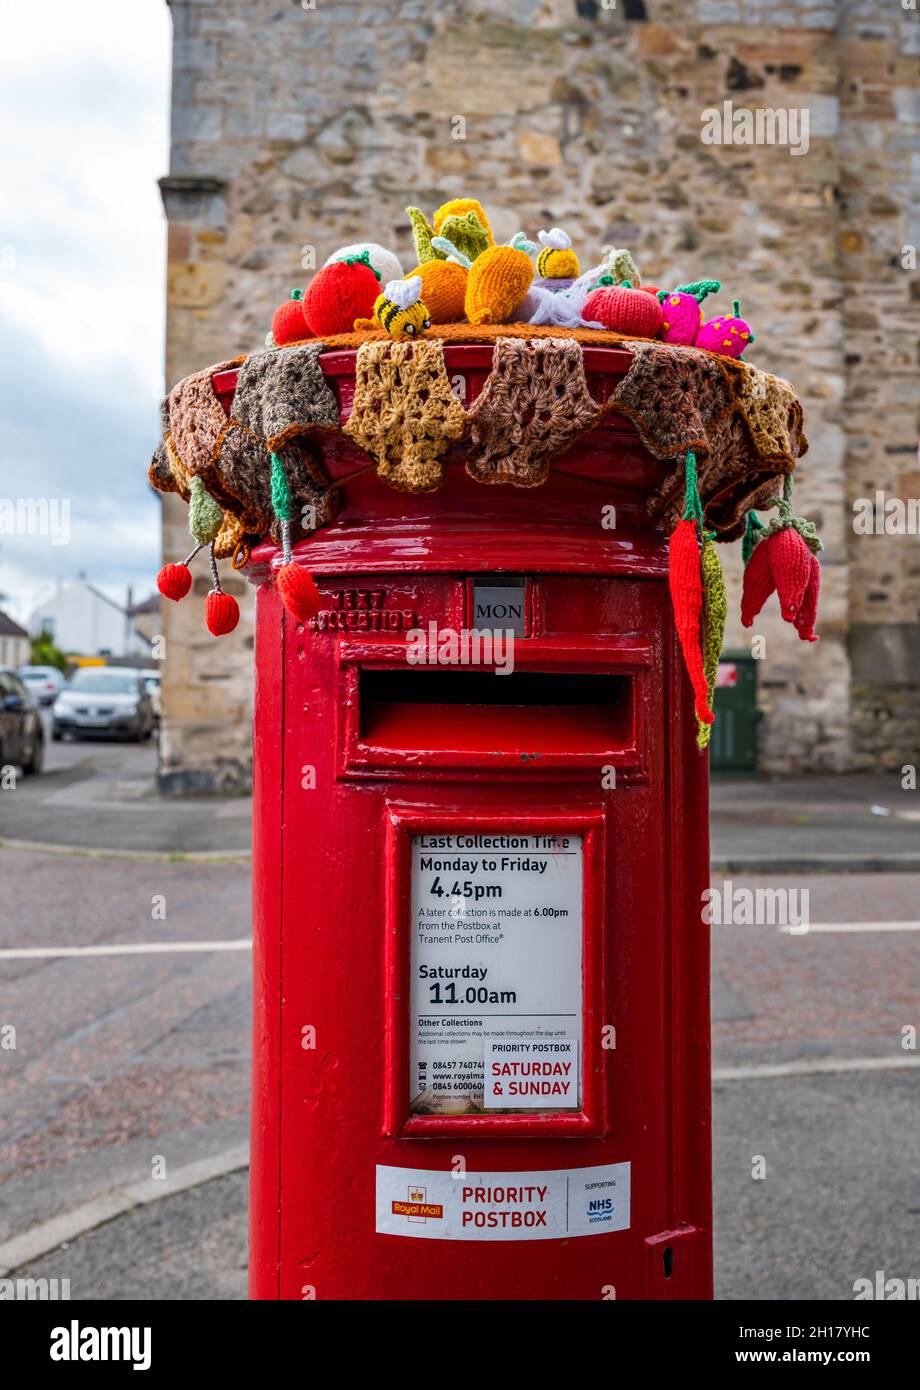 Décoration de récolte en bonneterie sur la boîte postale Royal Mail, bureau de poste du village d'Ormiston, East Lothian, Écosse, Royaume-Uni Banque D'Images